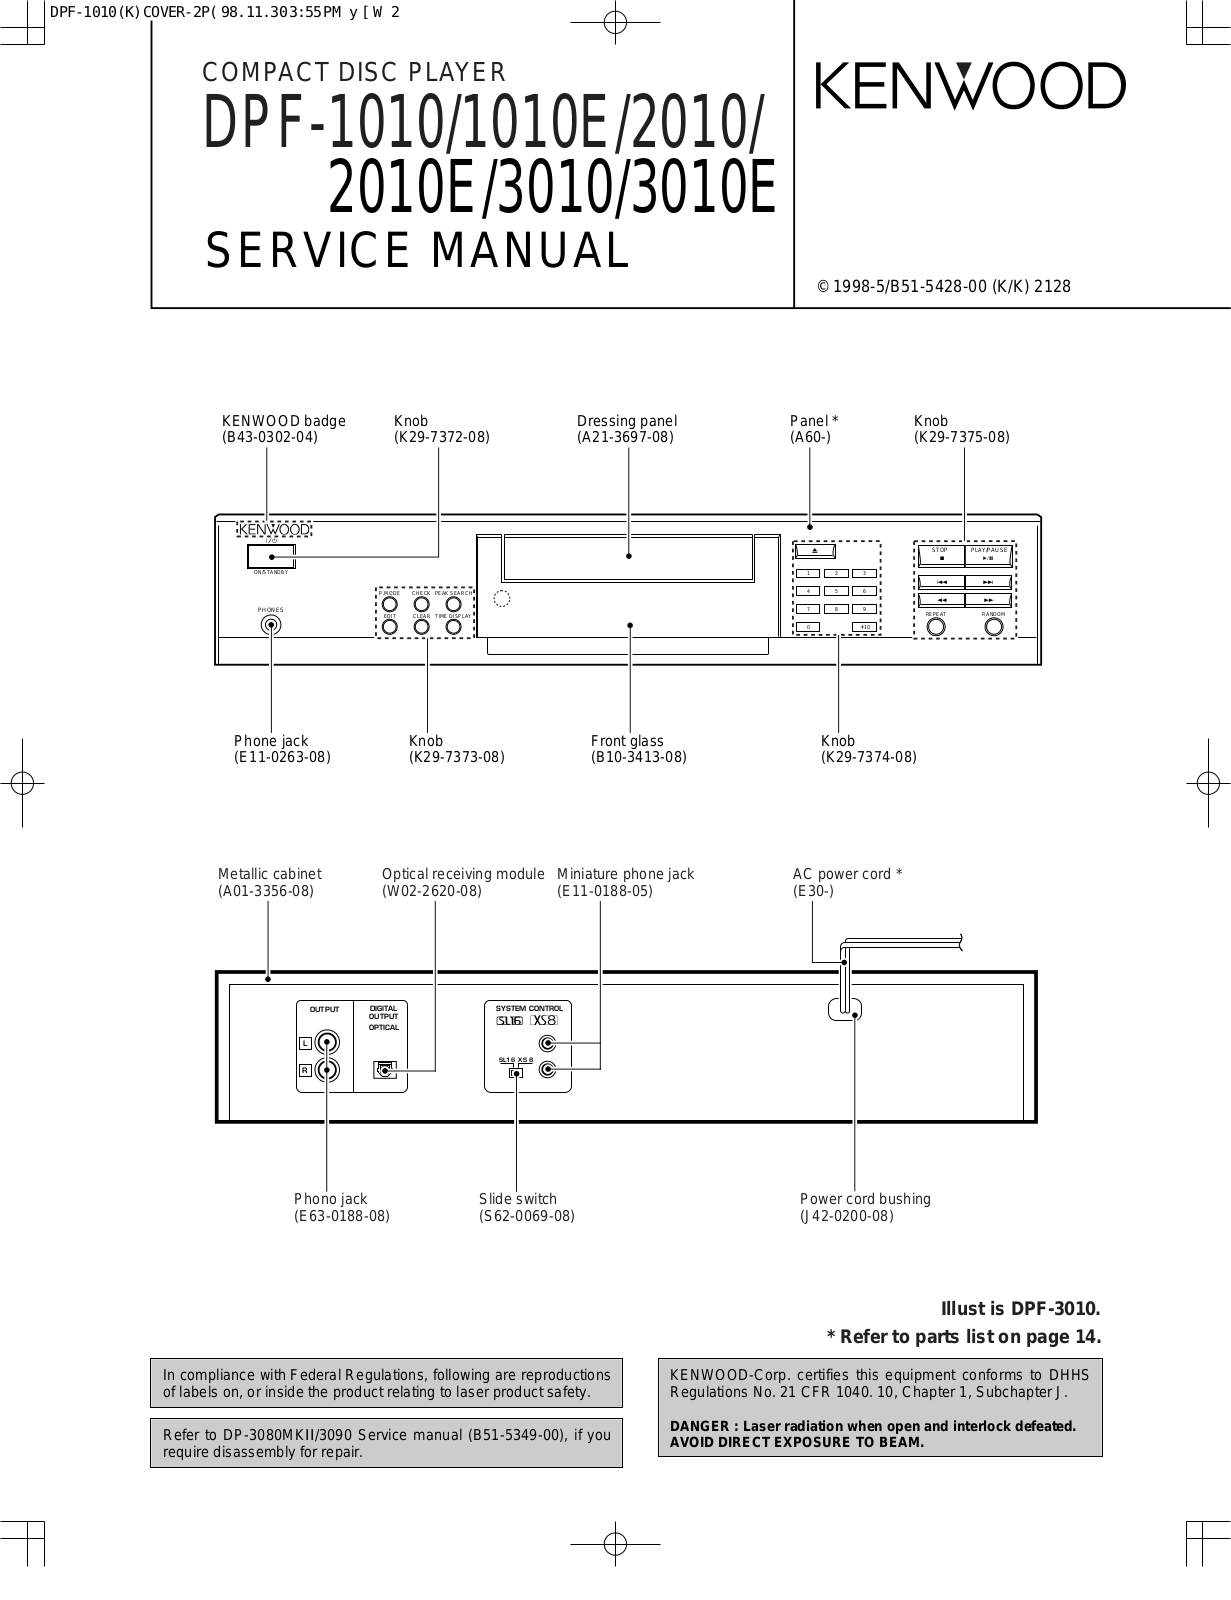 KENWOOD 2010, 3010 Service Manual